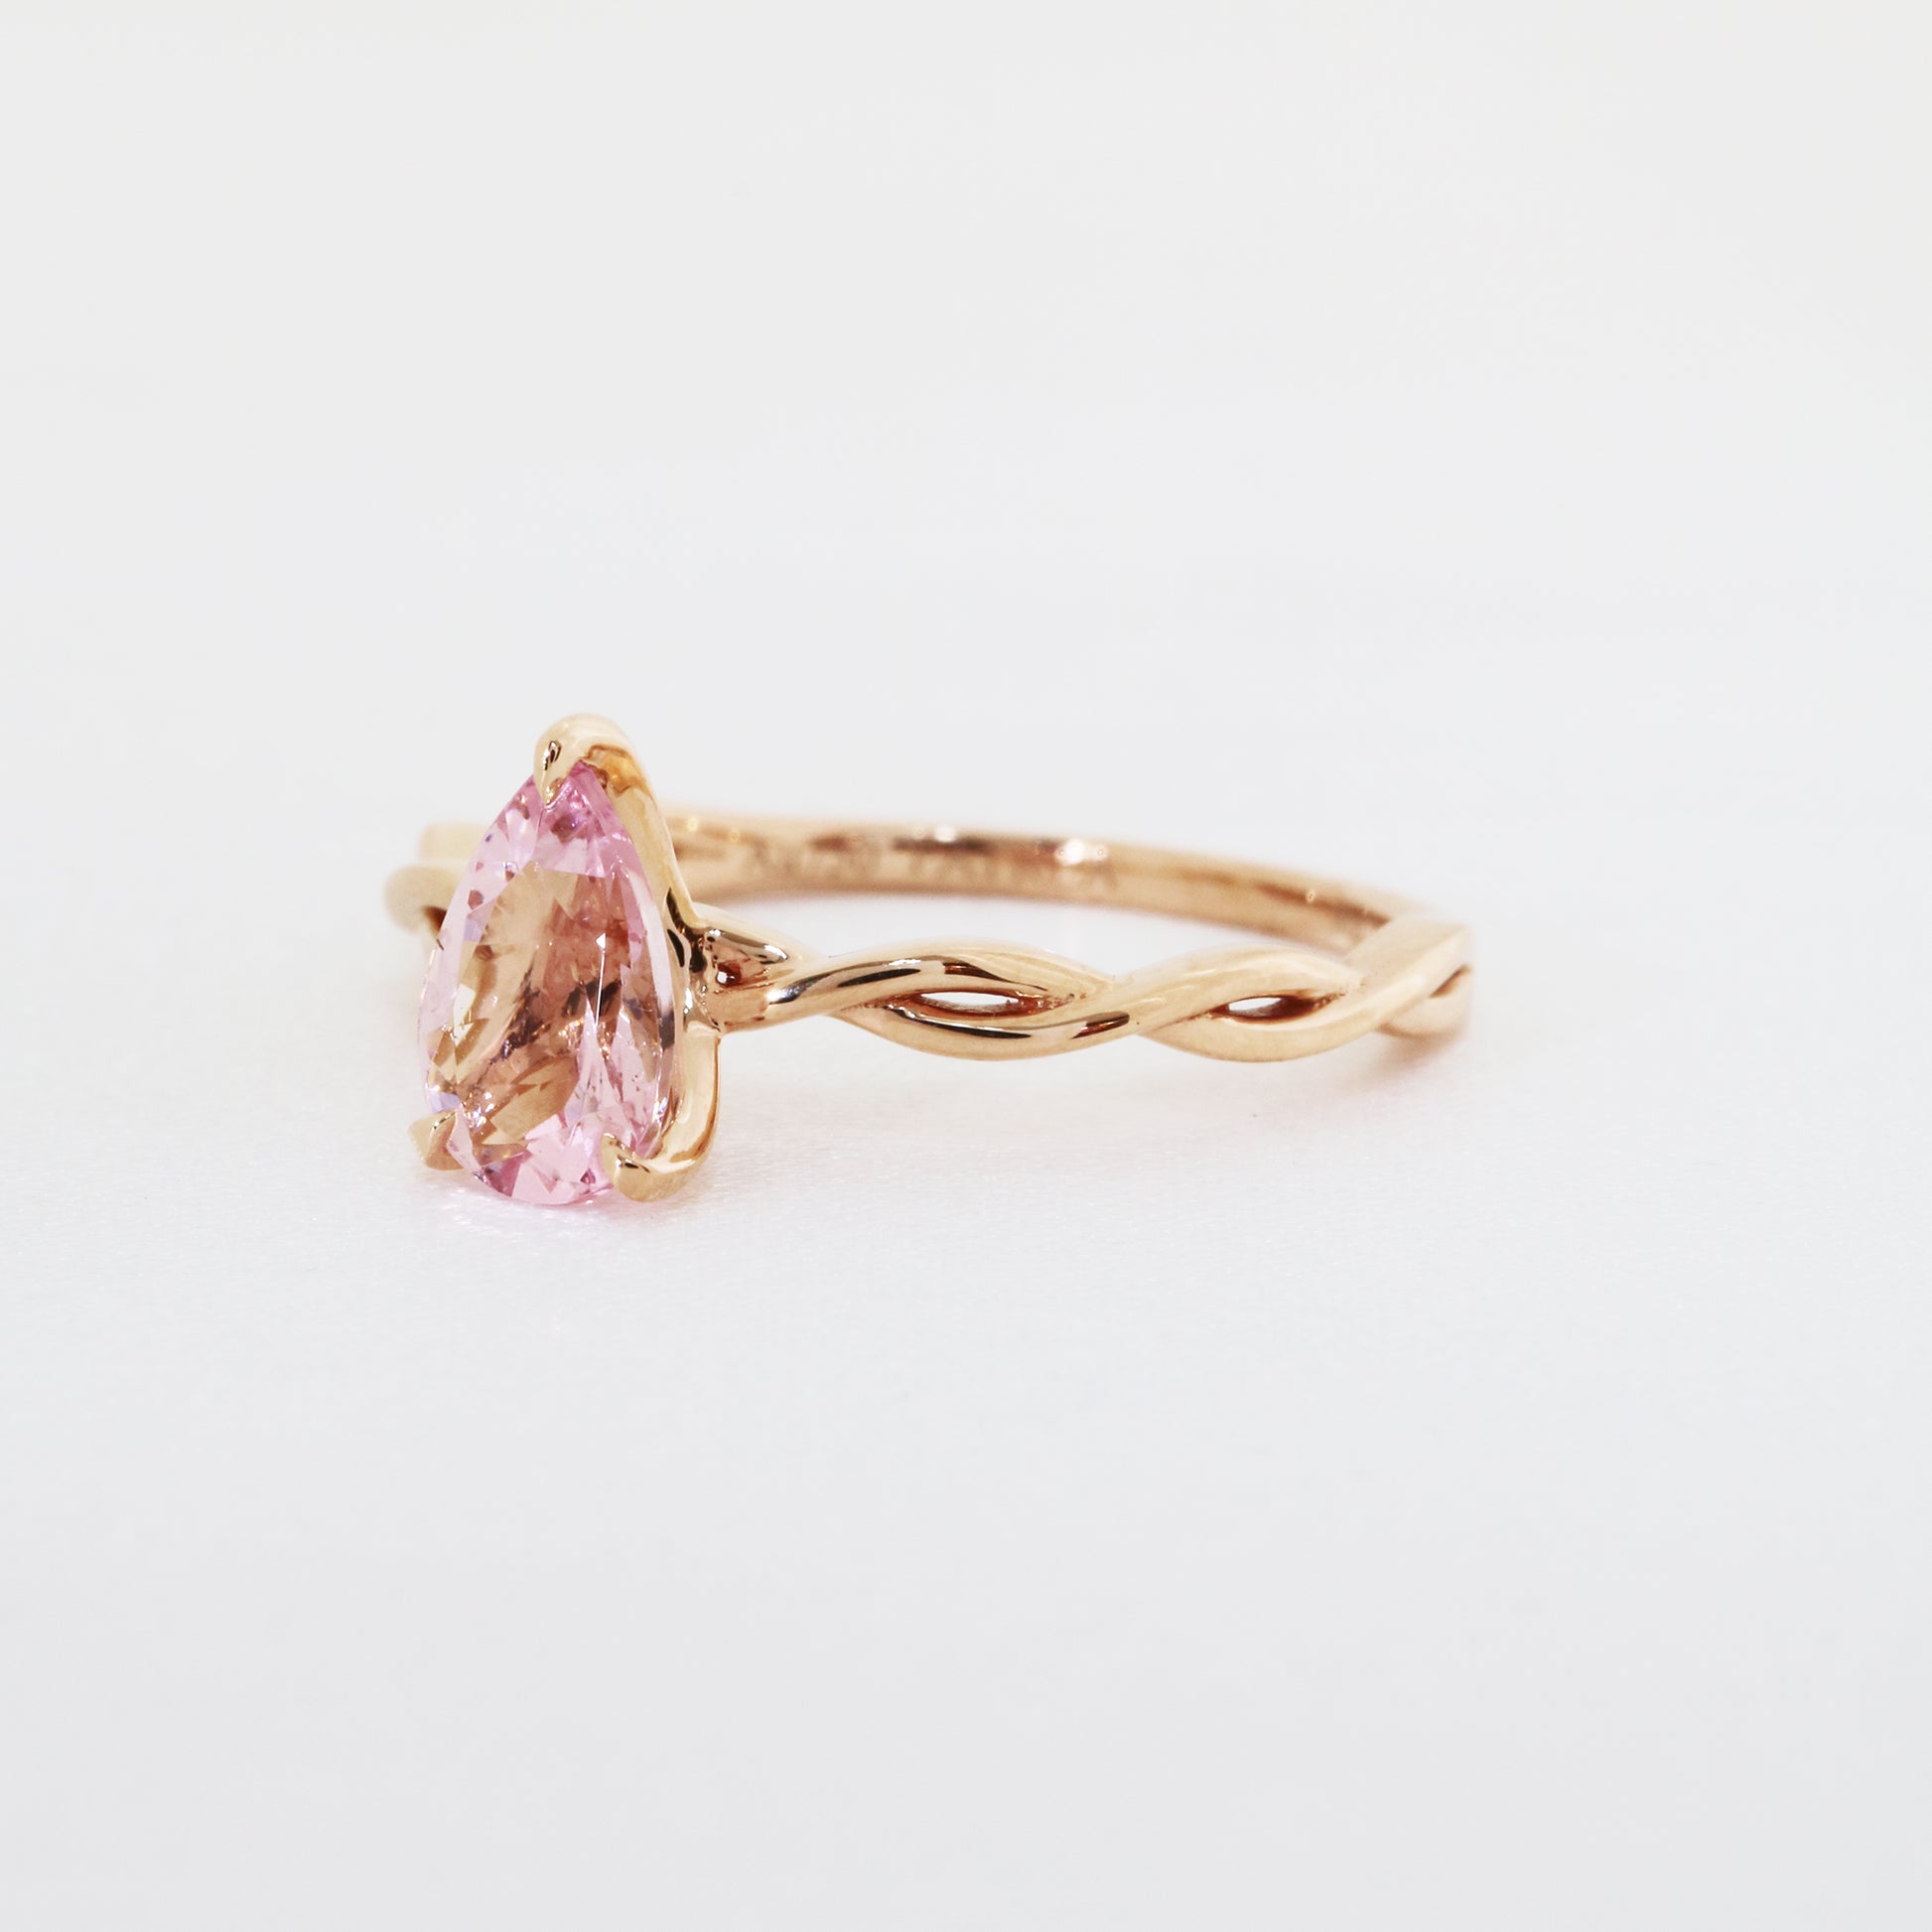 18k玫瑰金水滴形粉紅摩根石鑽石戒指側面 18k Rose Gold Pear-shaped Morganite Diamond Ring on side view